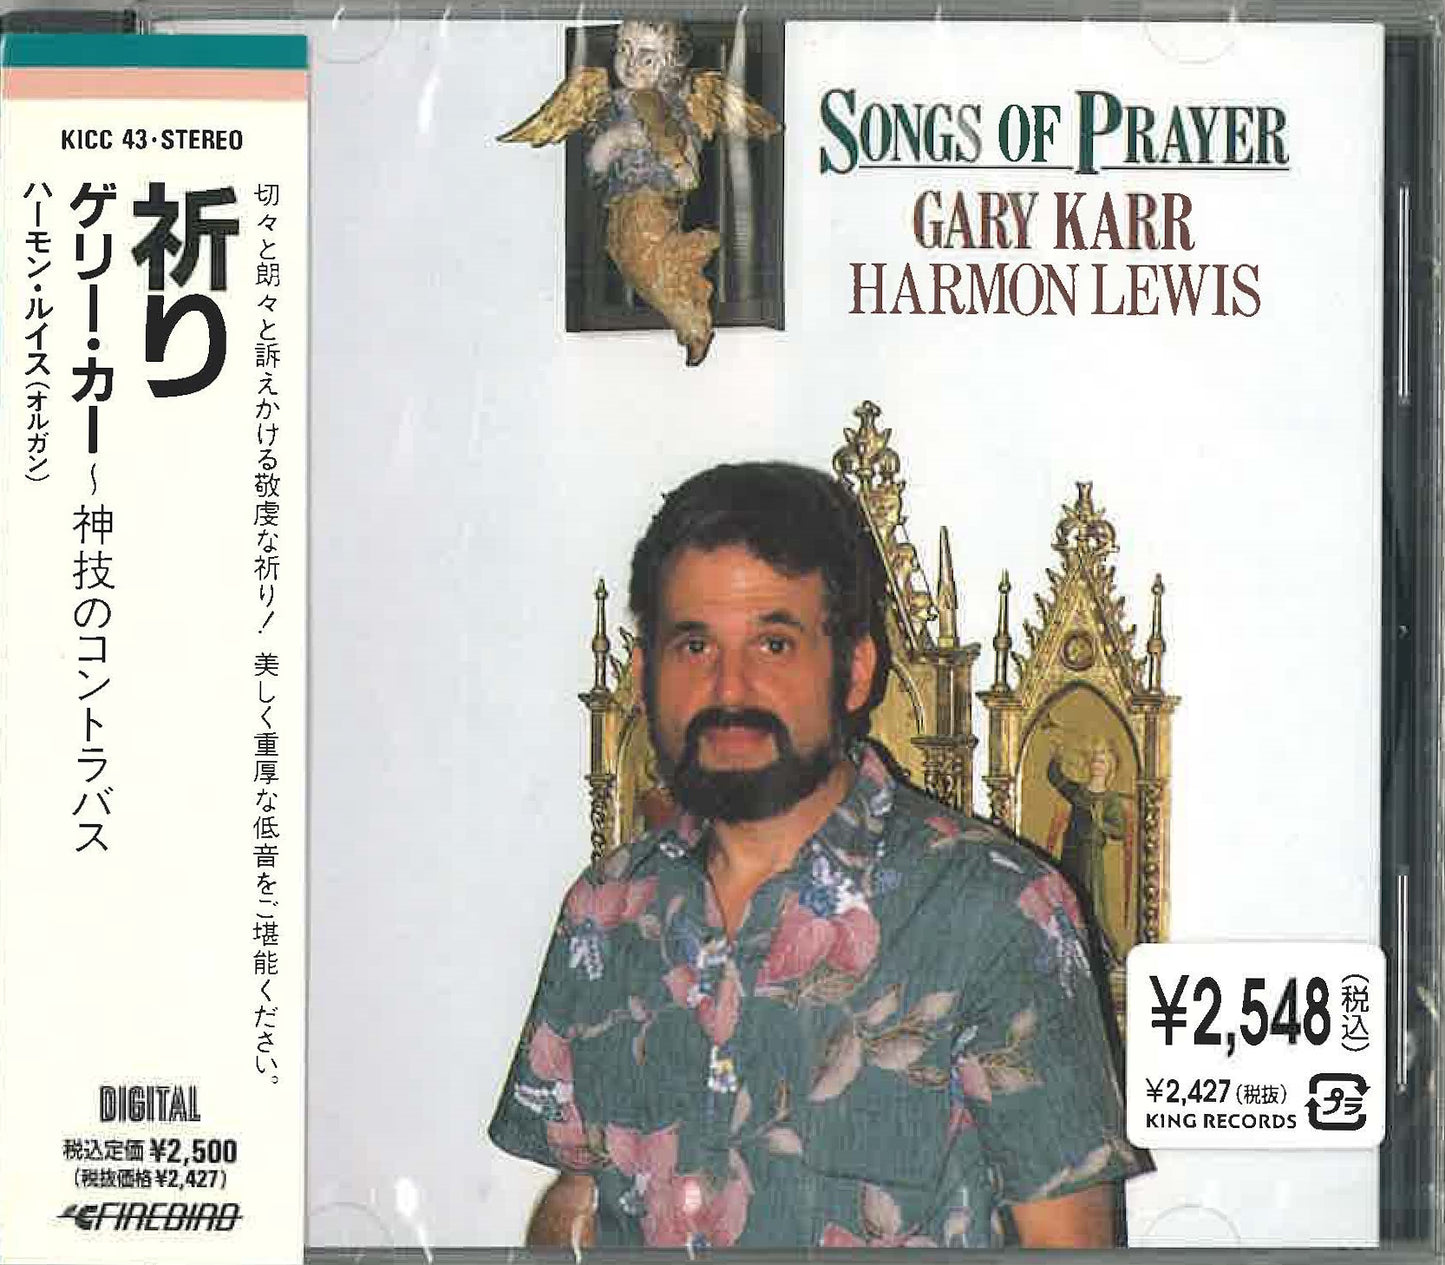 Gary Karr: Songs of Prayer